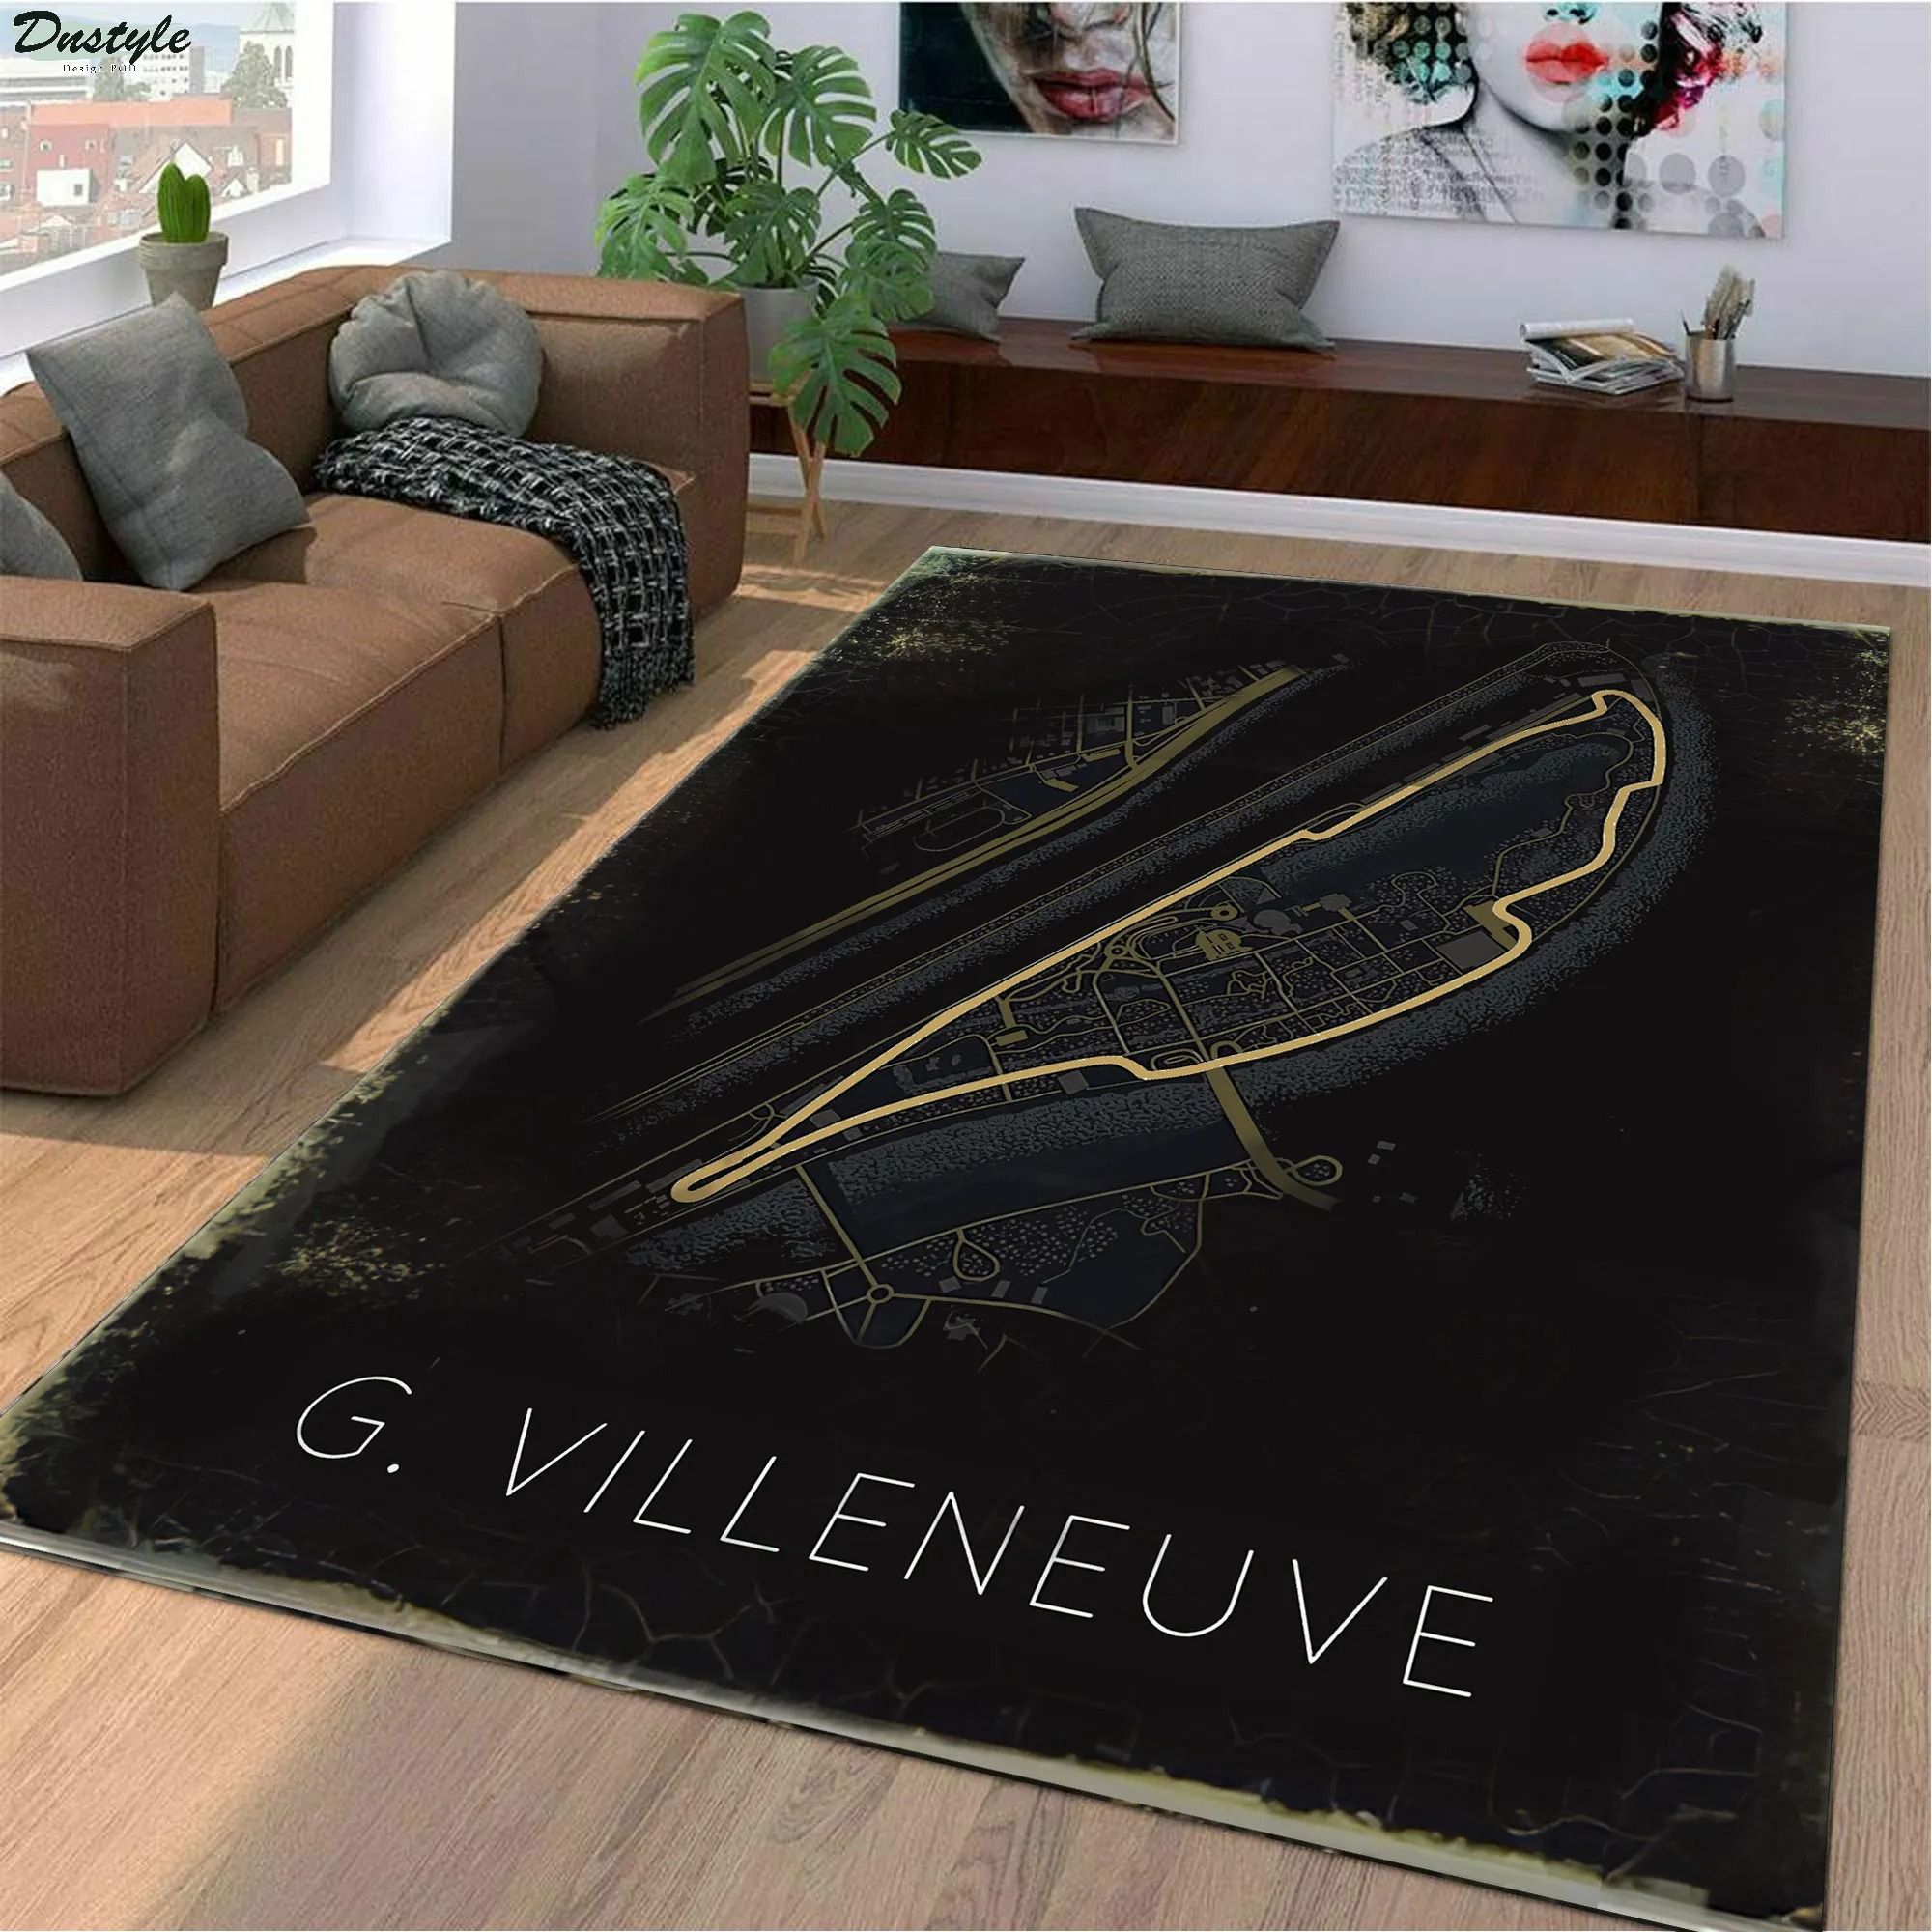 G villanueva f1 track rug